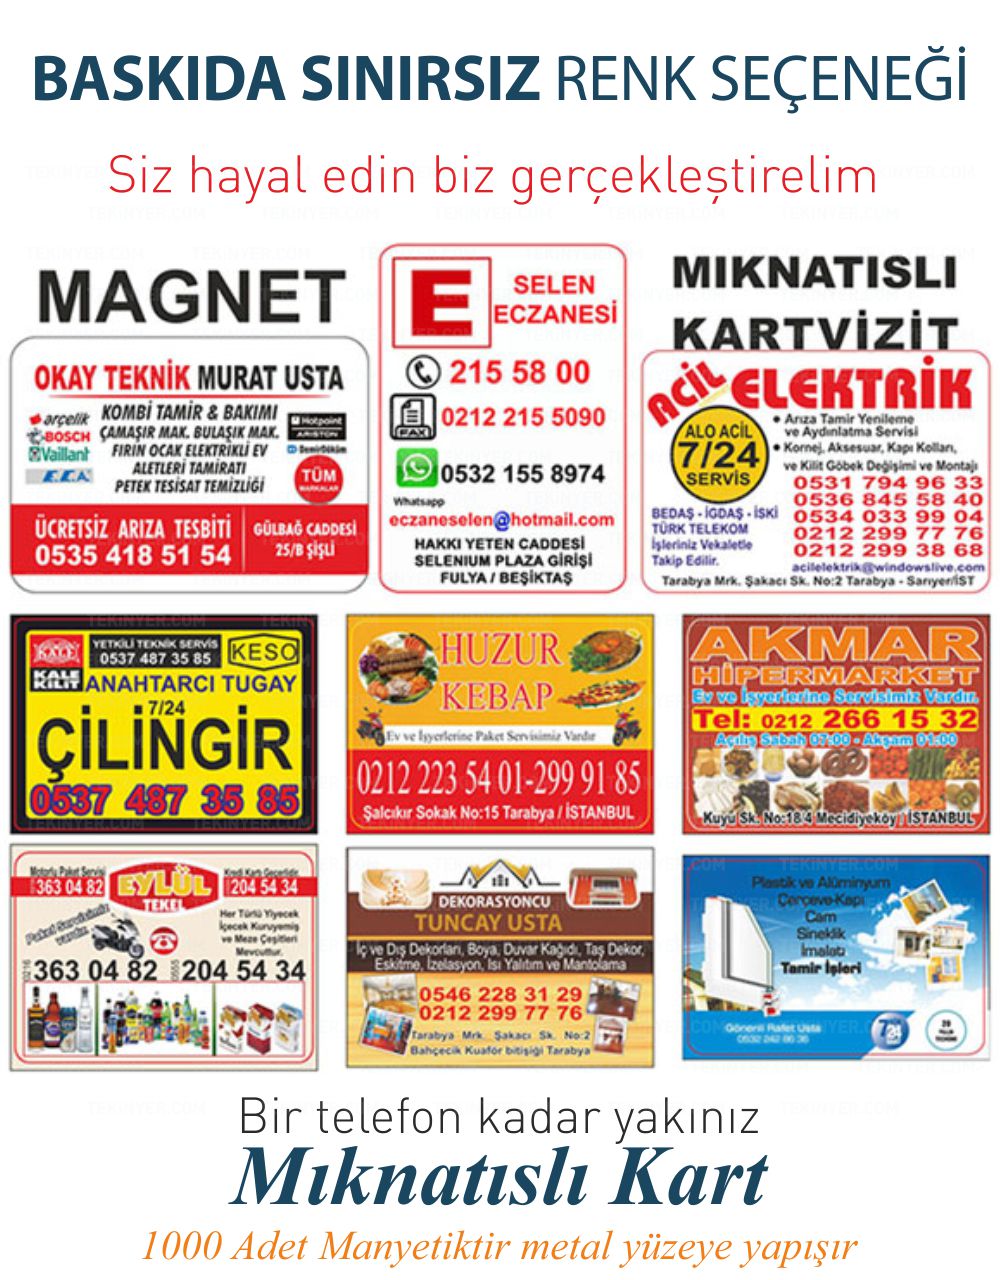 Beşiktaş Magnet Sınırsız Renk Baskı Seçeneği